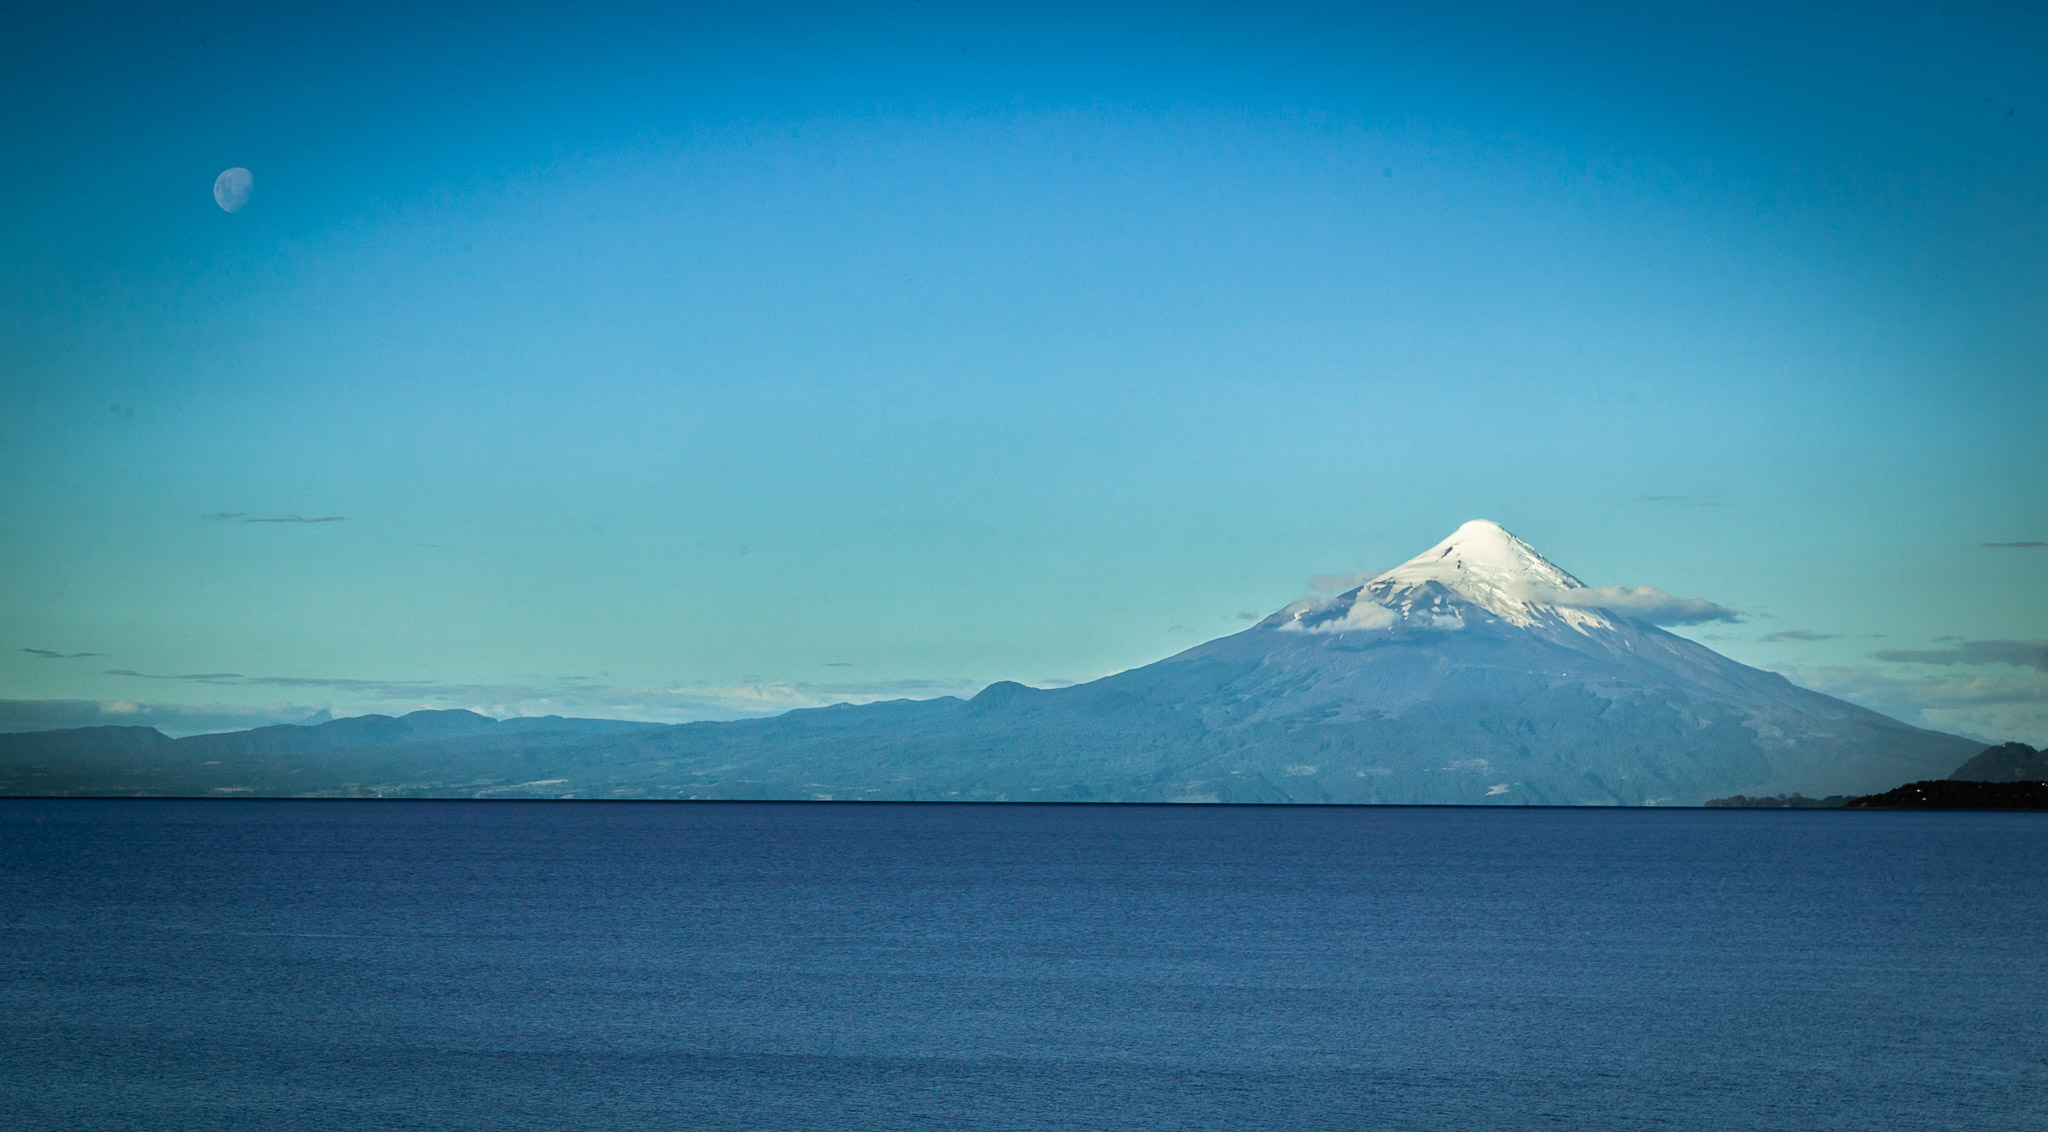 Volcan Osorno & Lake Llanquihue, Puerto Varas